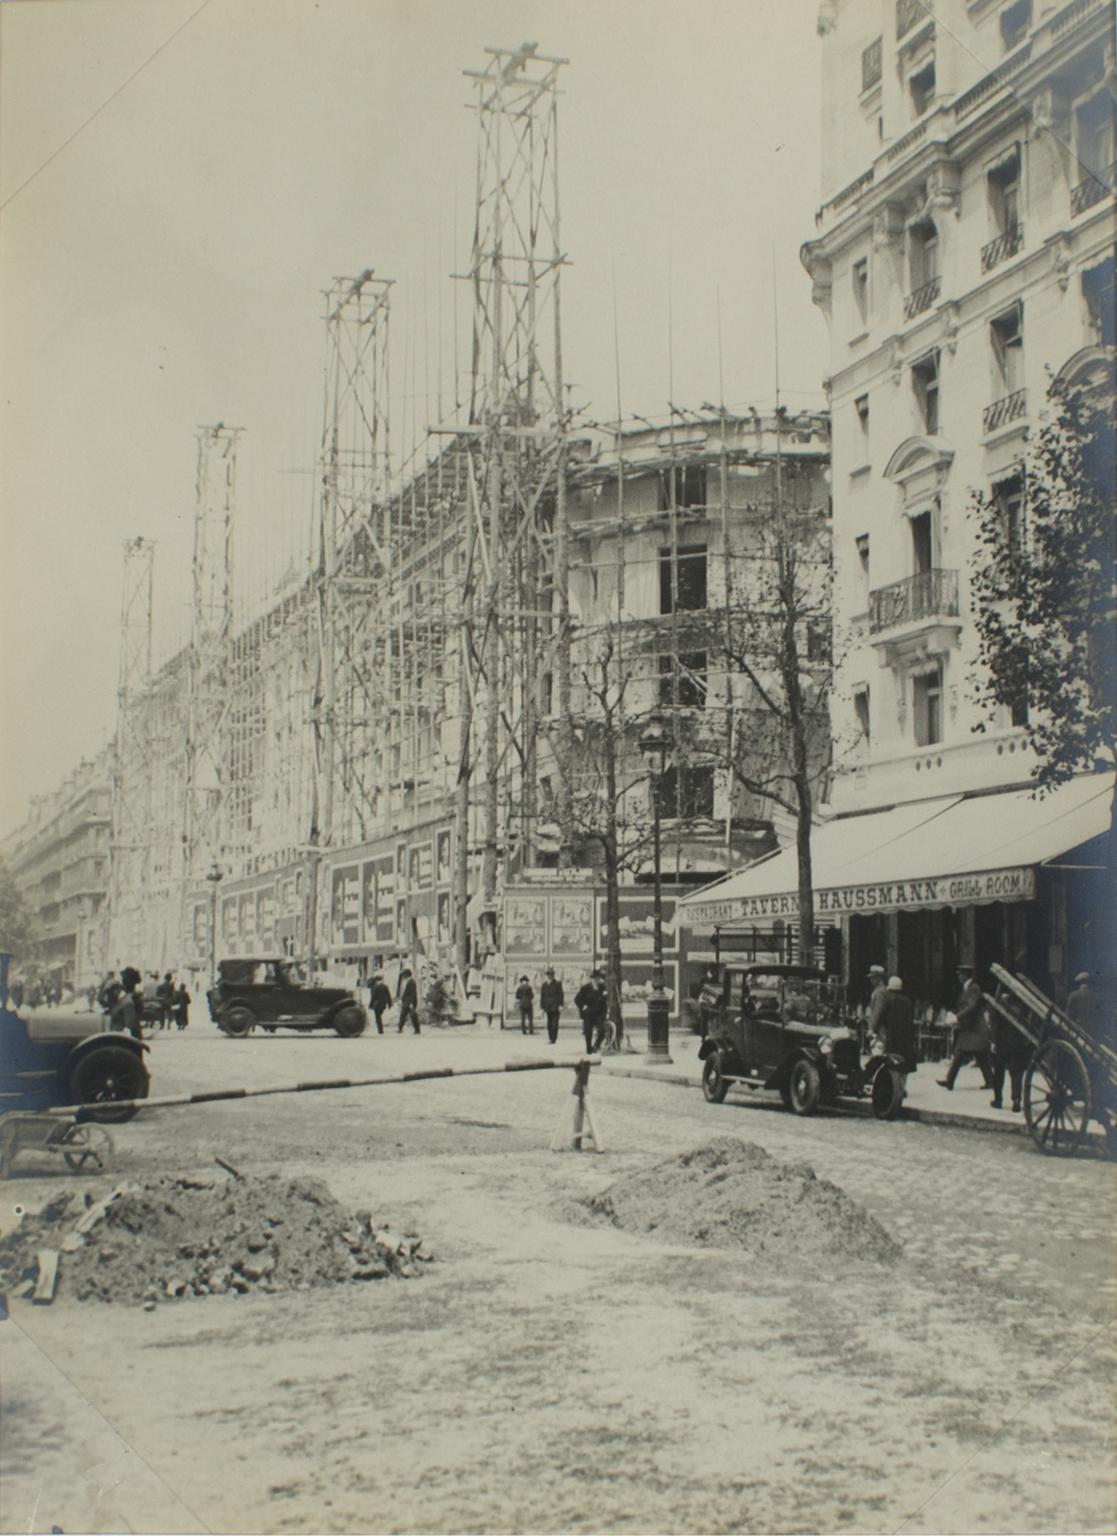 Press Photo Landscape Photograph – Boulevard Haussmann Konstruktion, Paris 1926, Silber-Gelatine-B und W-Fotografie